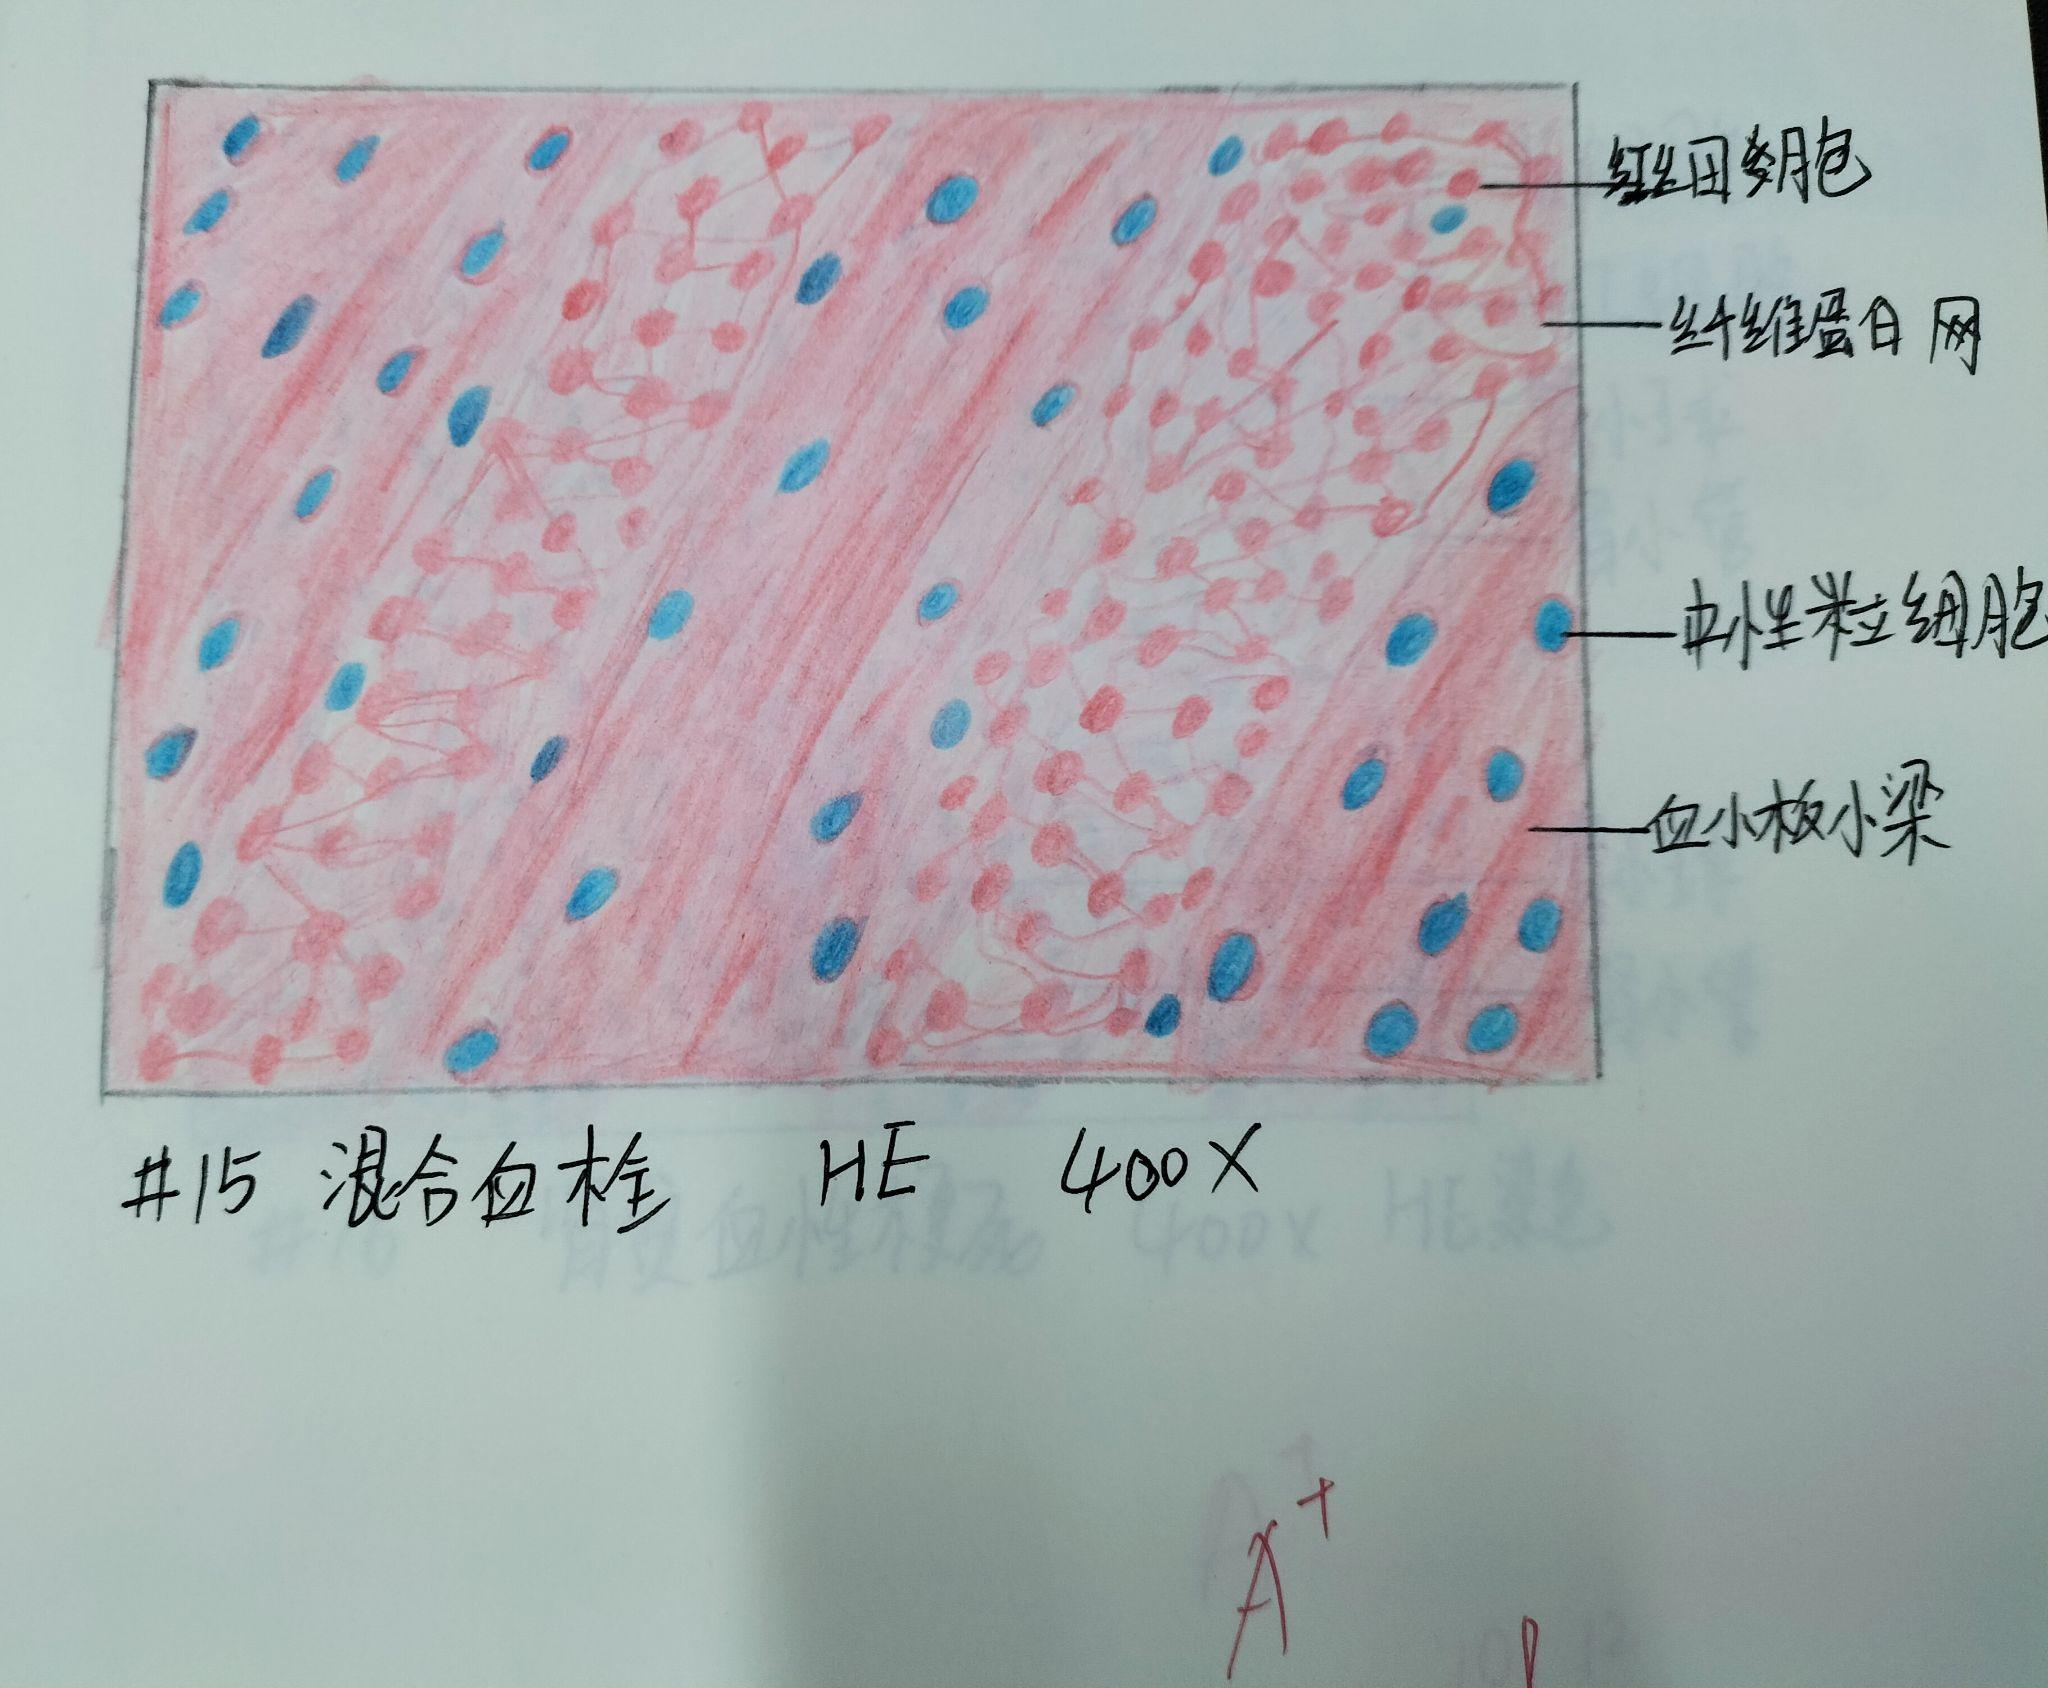 脊髓灰质红蓝铅笔图片